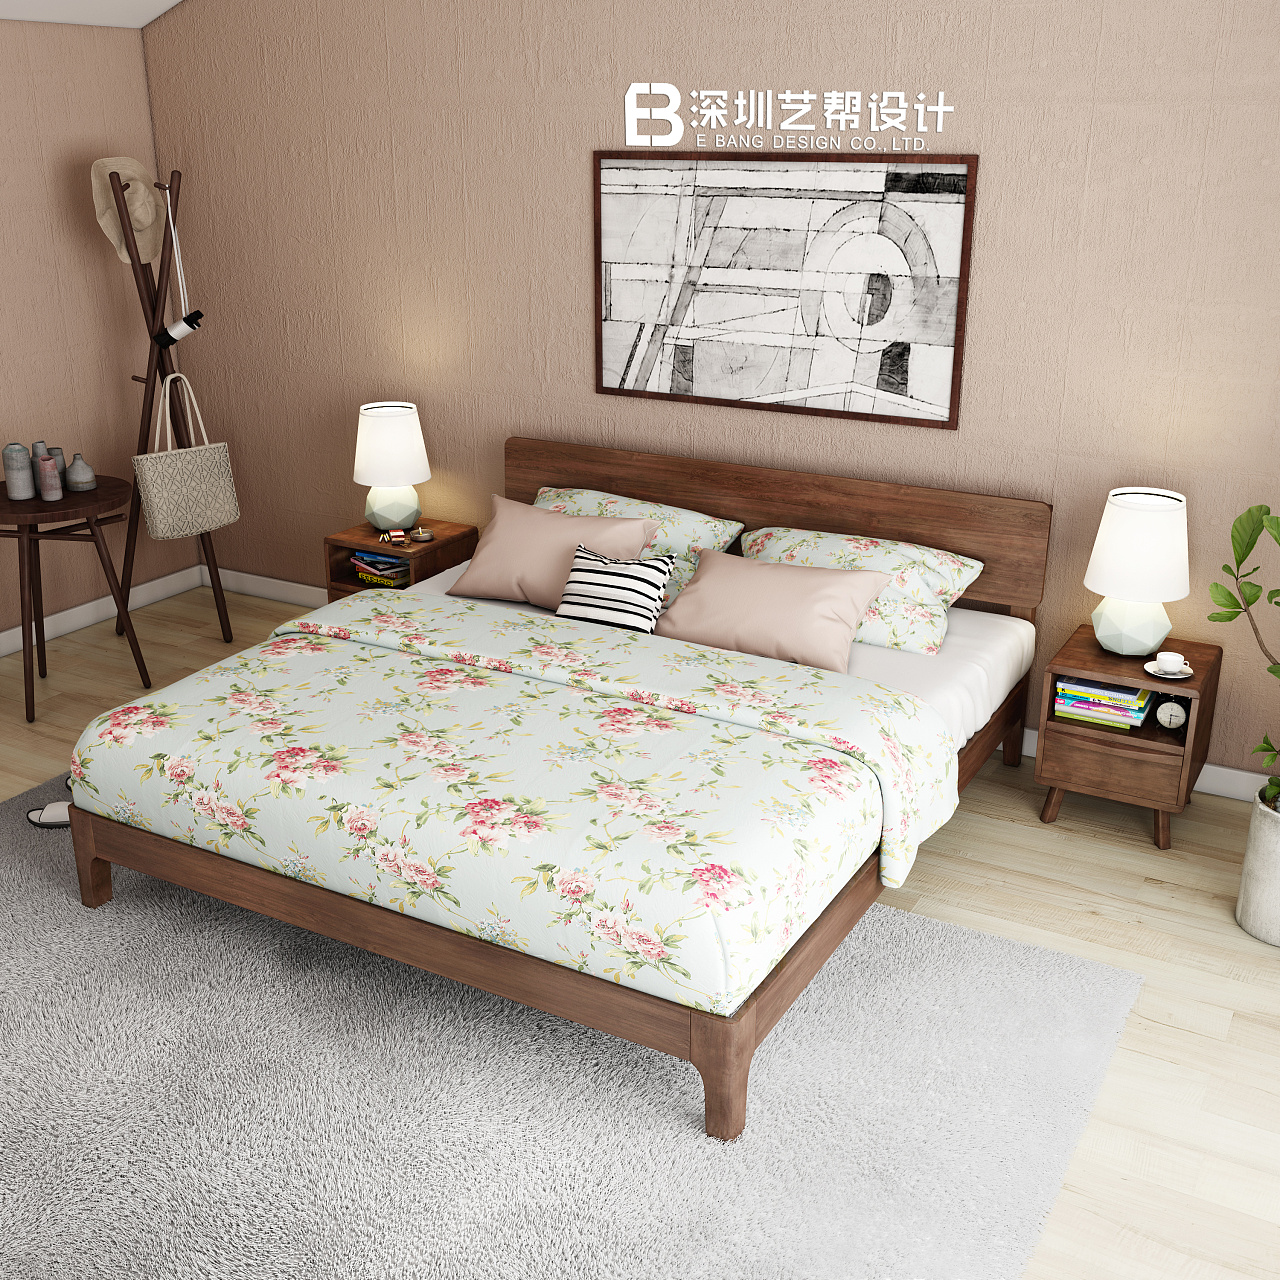 美式风格卧室实木床设计效果图_装信通网效果图